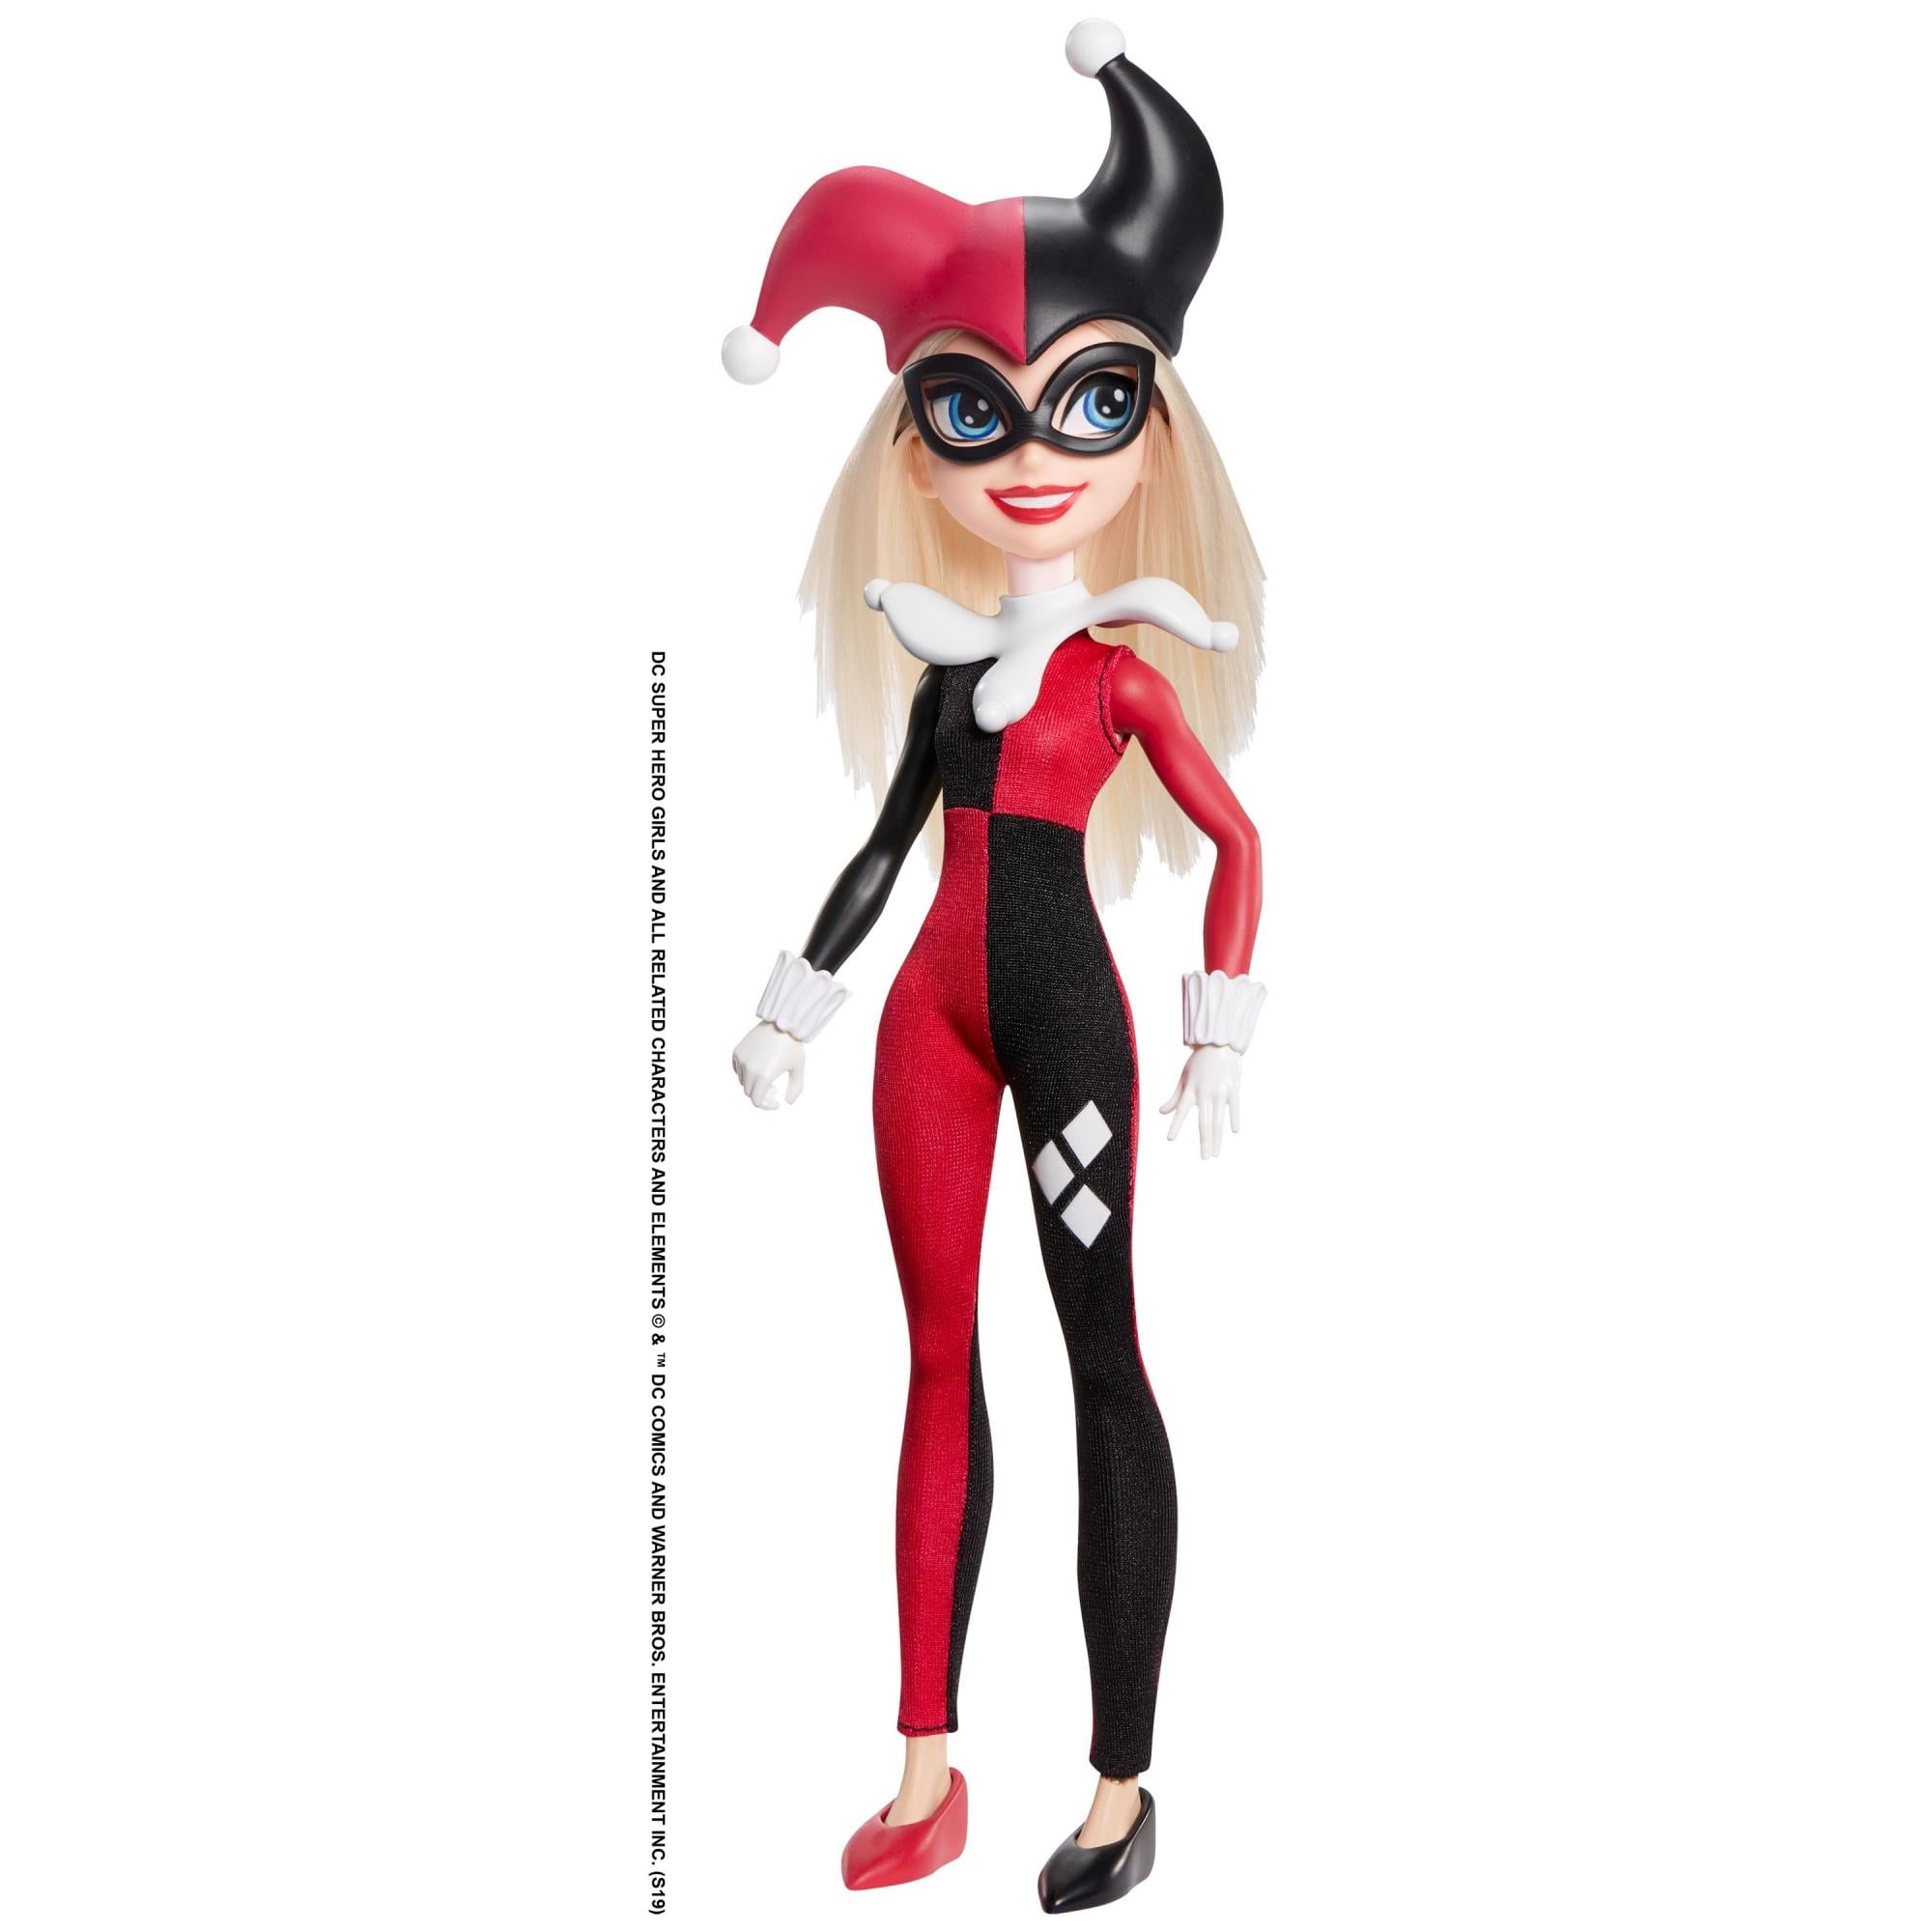 DC Super Héros Girls Harley Quinn Doll 12" Action Figure 